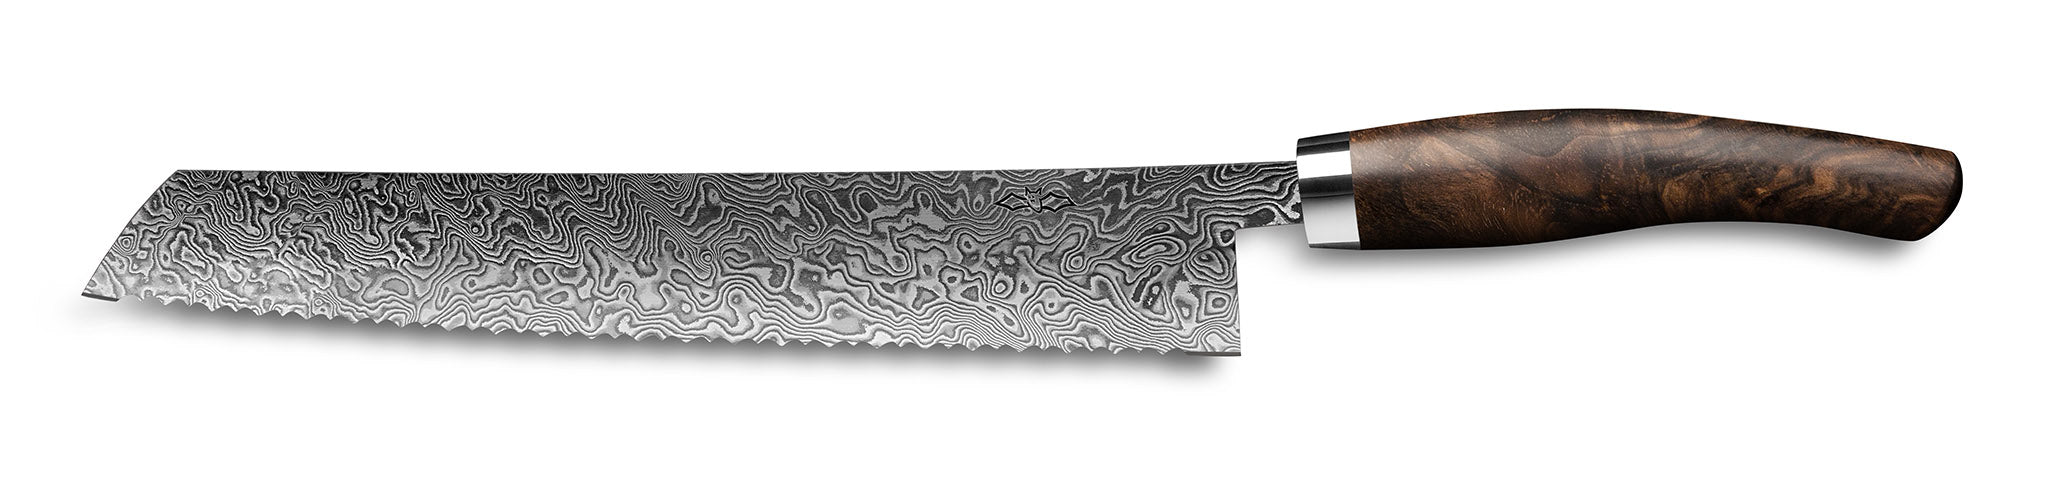 Brotmesser Exklusiv C90 von Nesmuk 180 mm mit Klinge aus handgeschmiedetem wildem Damast und elfenbeinfarbenem Griff aus Walnuss